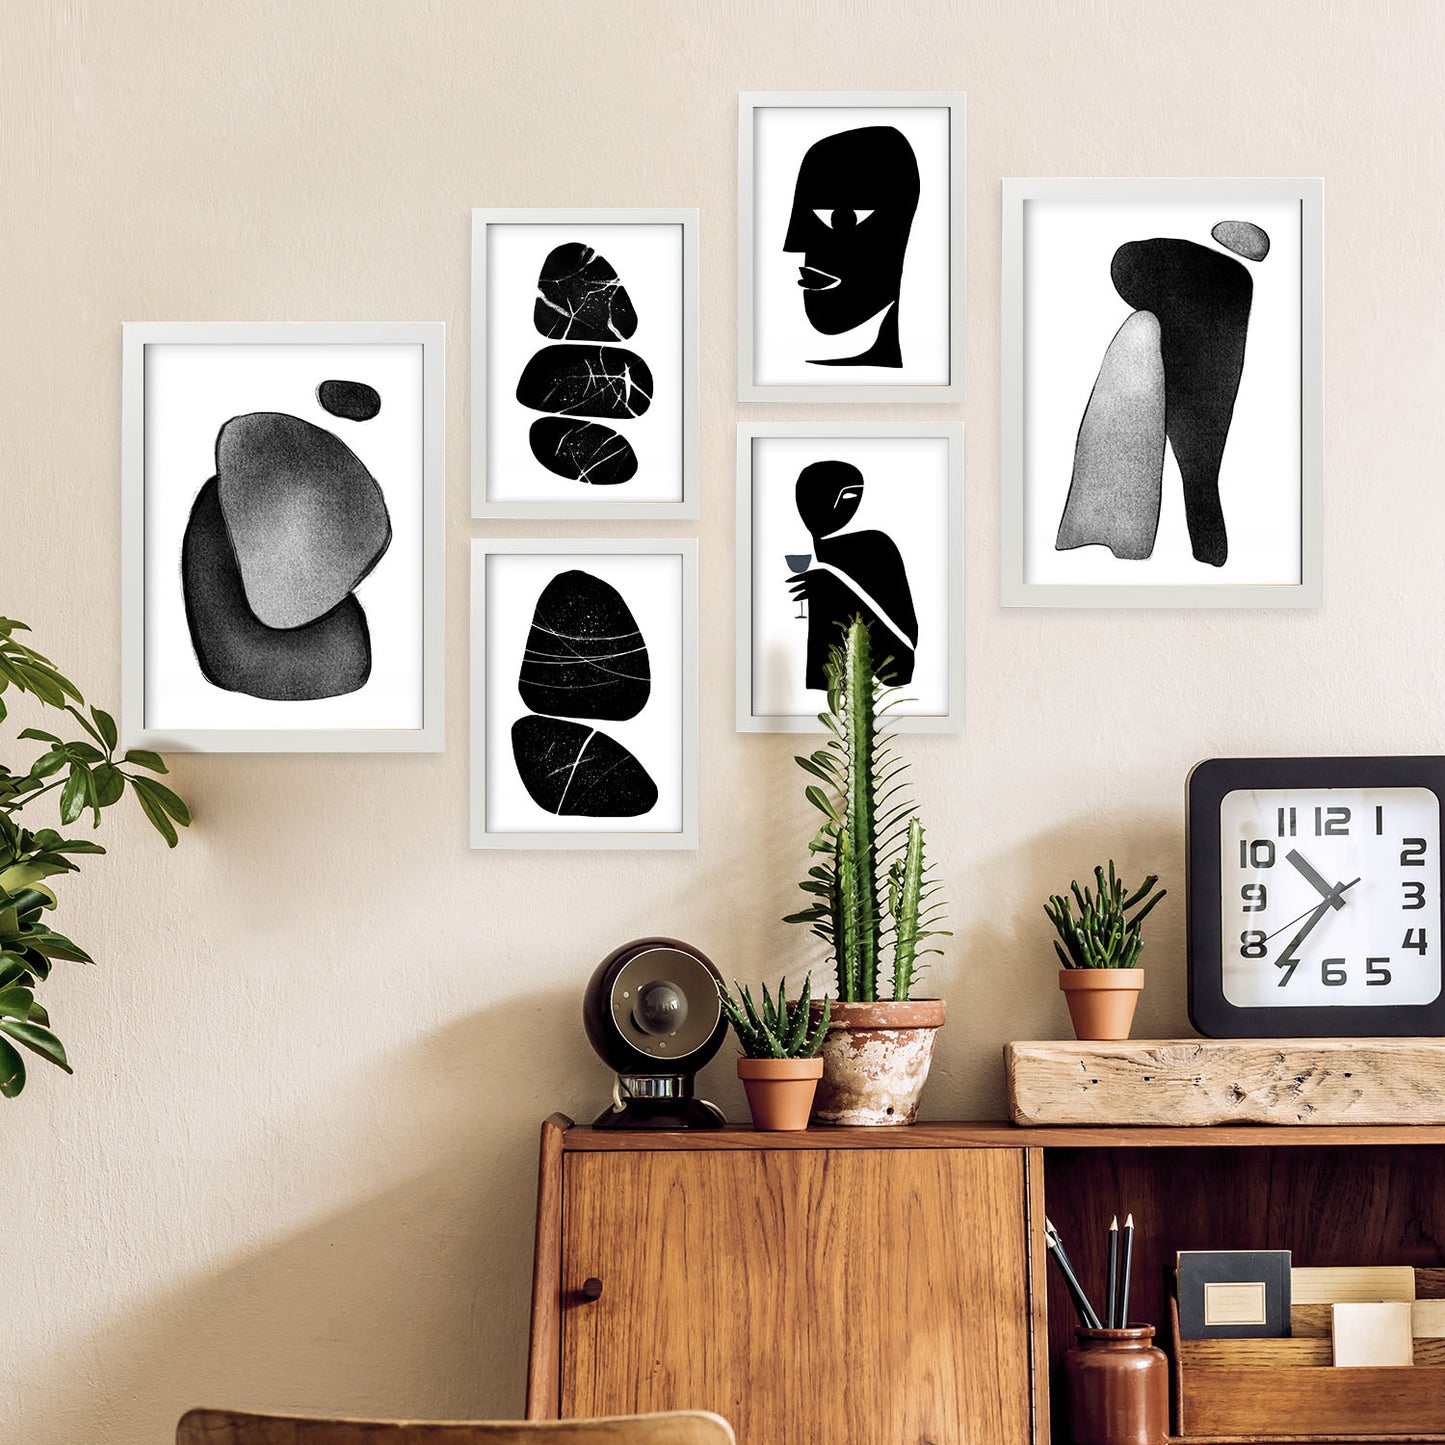 Nacnic Set de 6 Cabezales sin dato Posters. En Amantes abstracto. Estampados decorativos estéticos para su sala de estar, dormitorio, hogar Tamaños A4 y A3